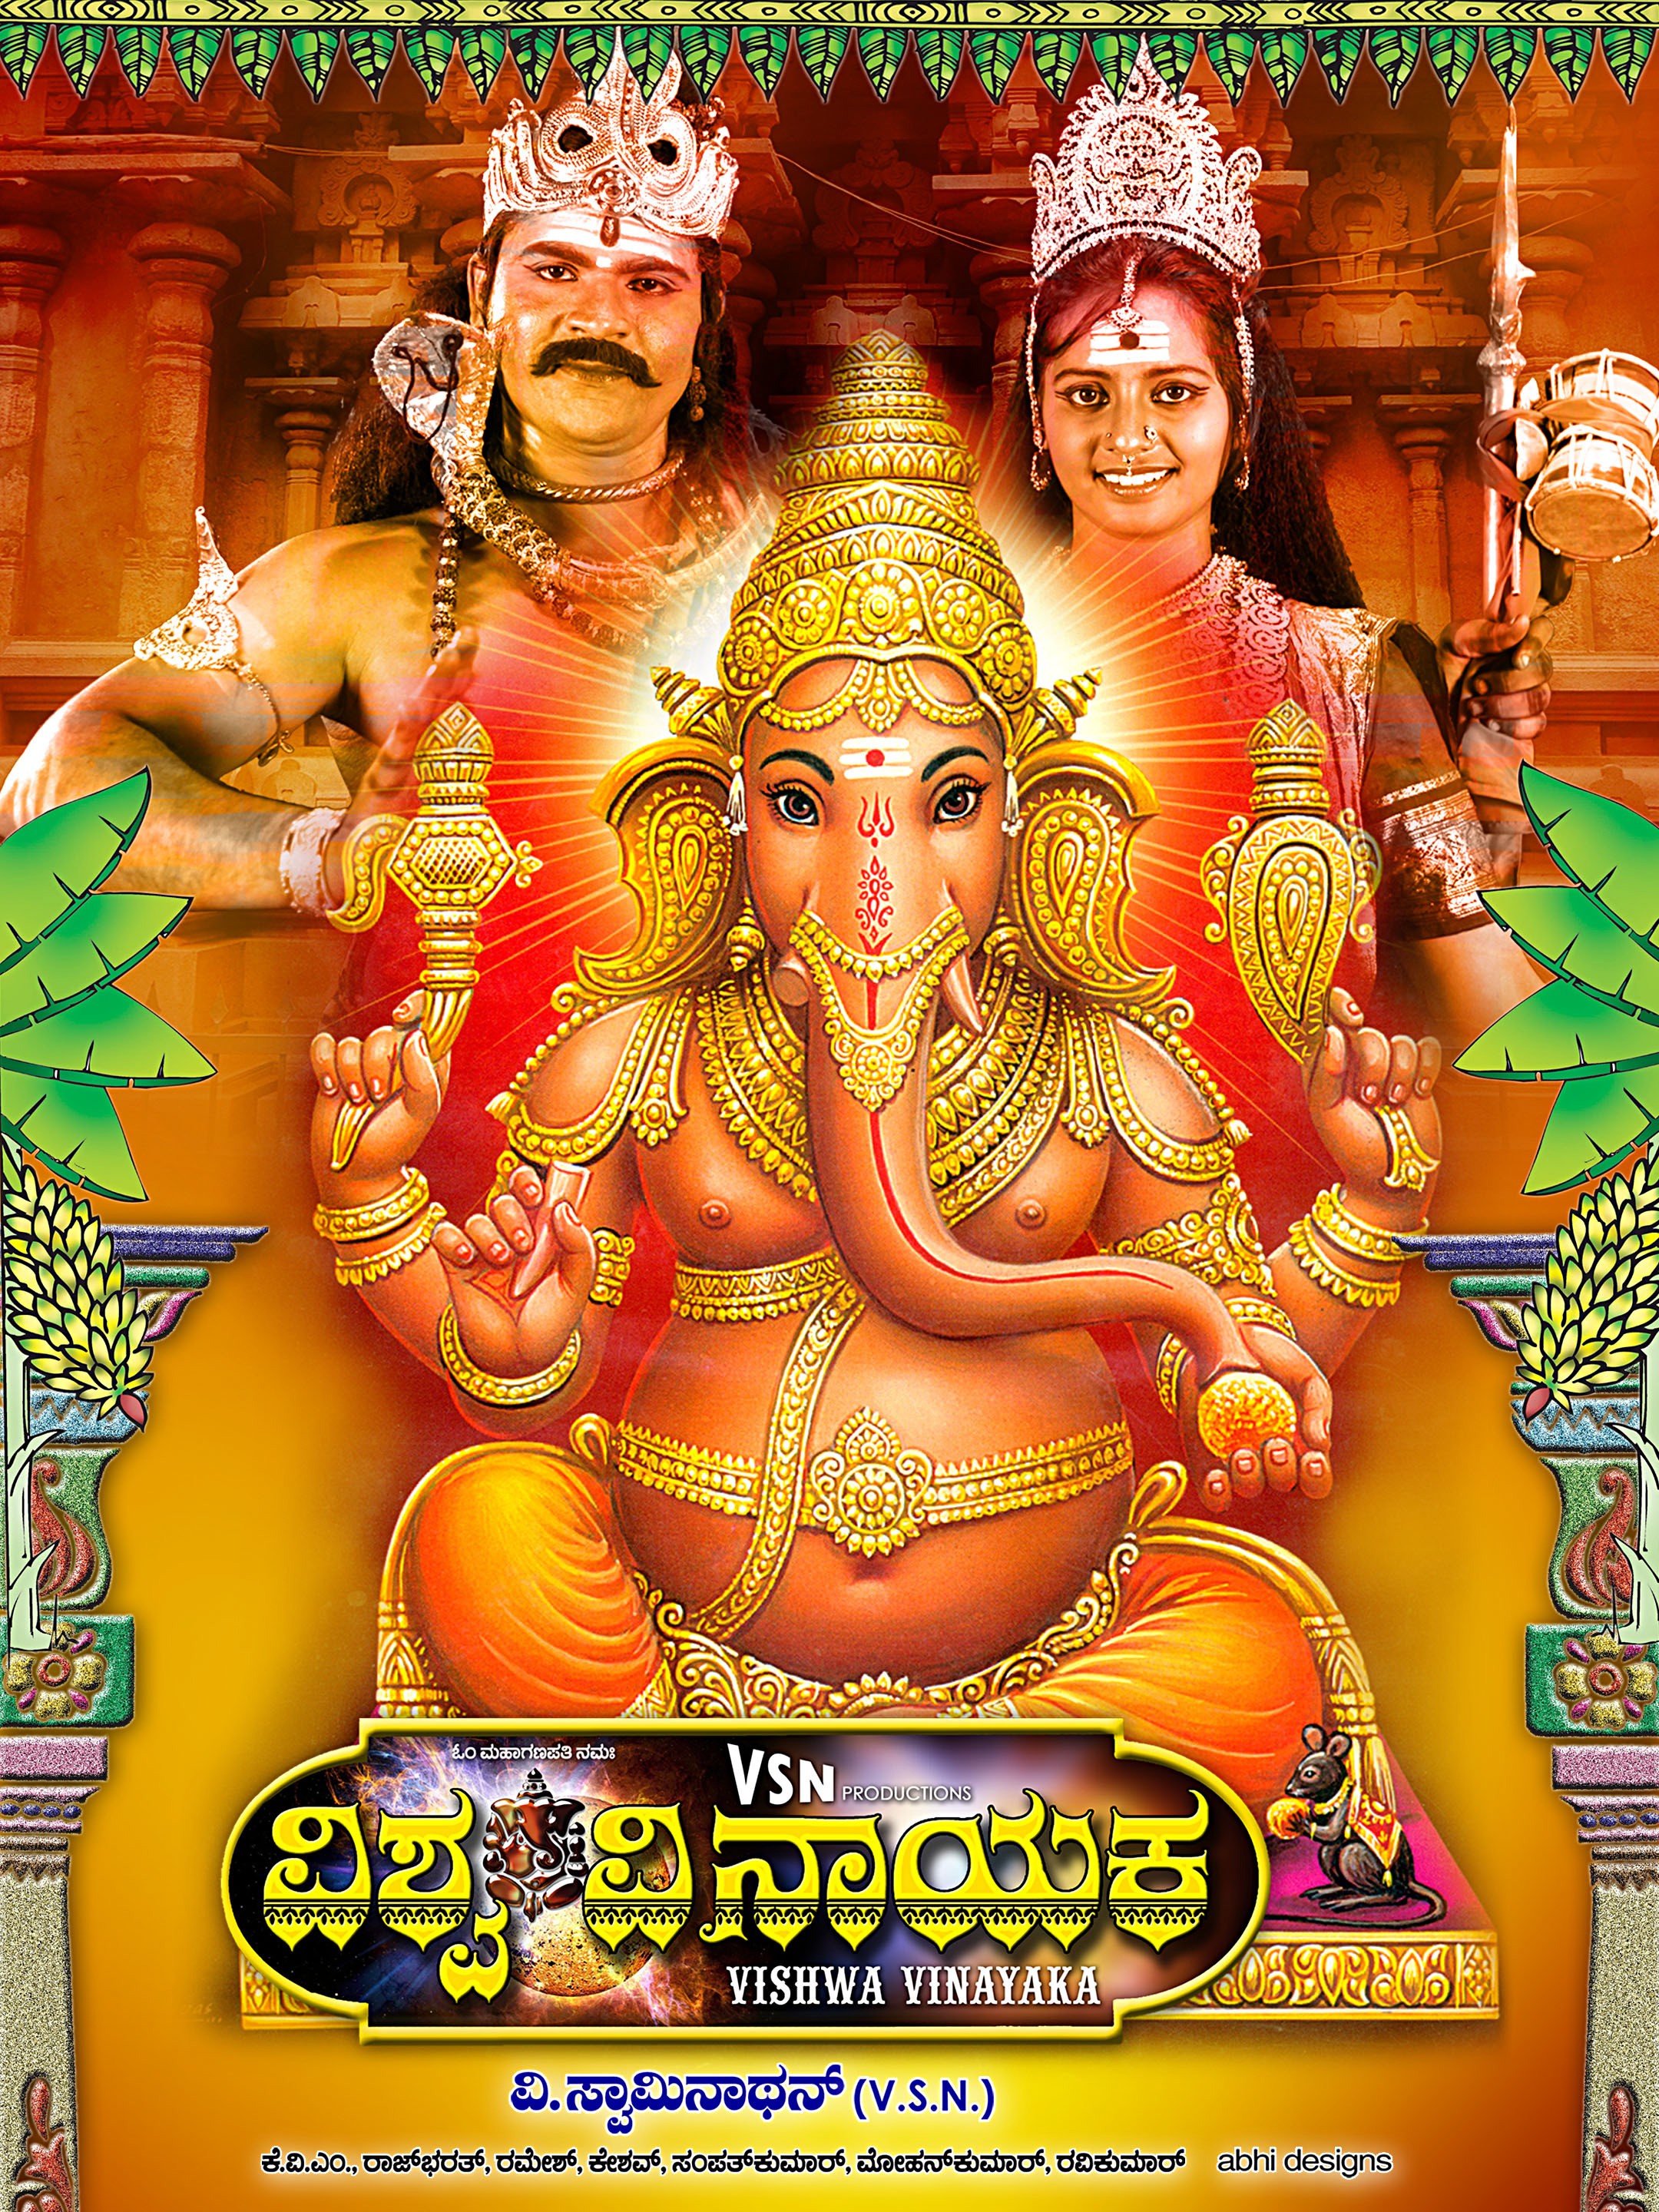 Mega Sized Movie Poster Image for Vishwa Vinayaka (#5 of 7)